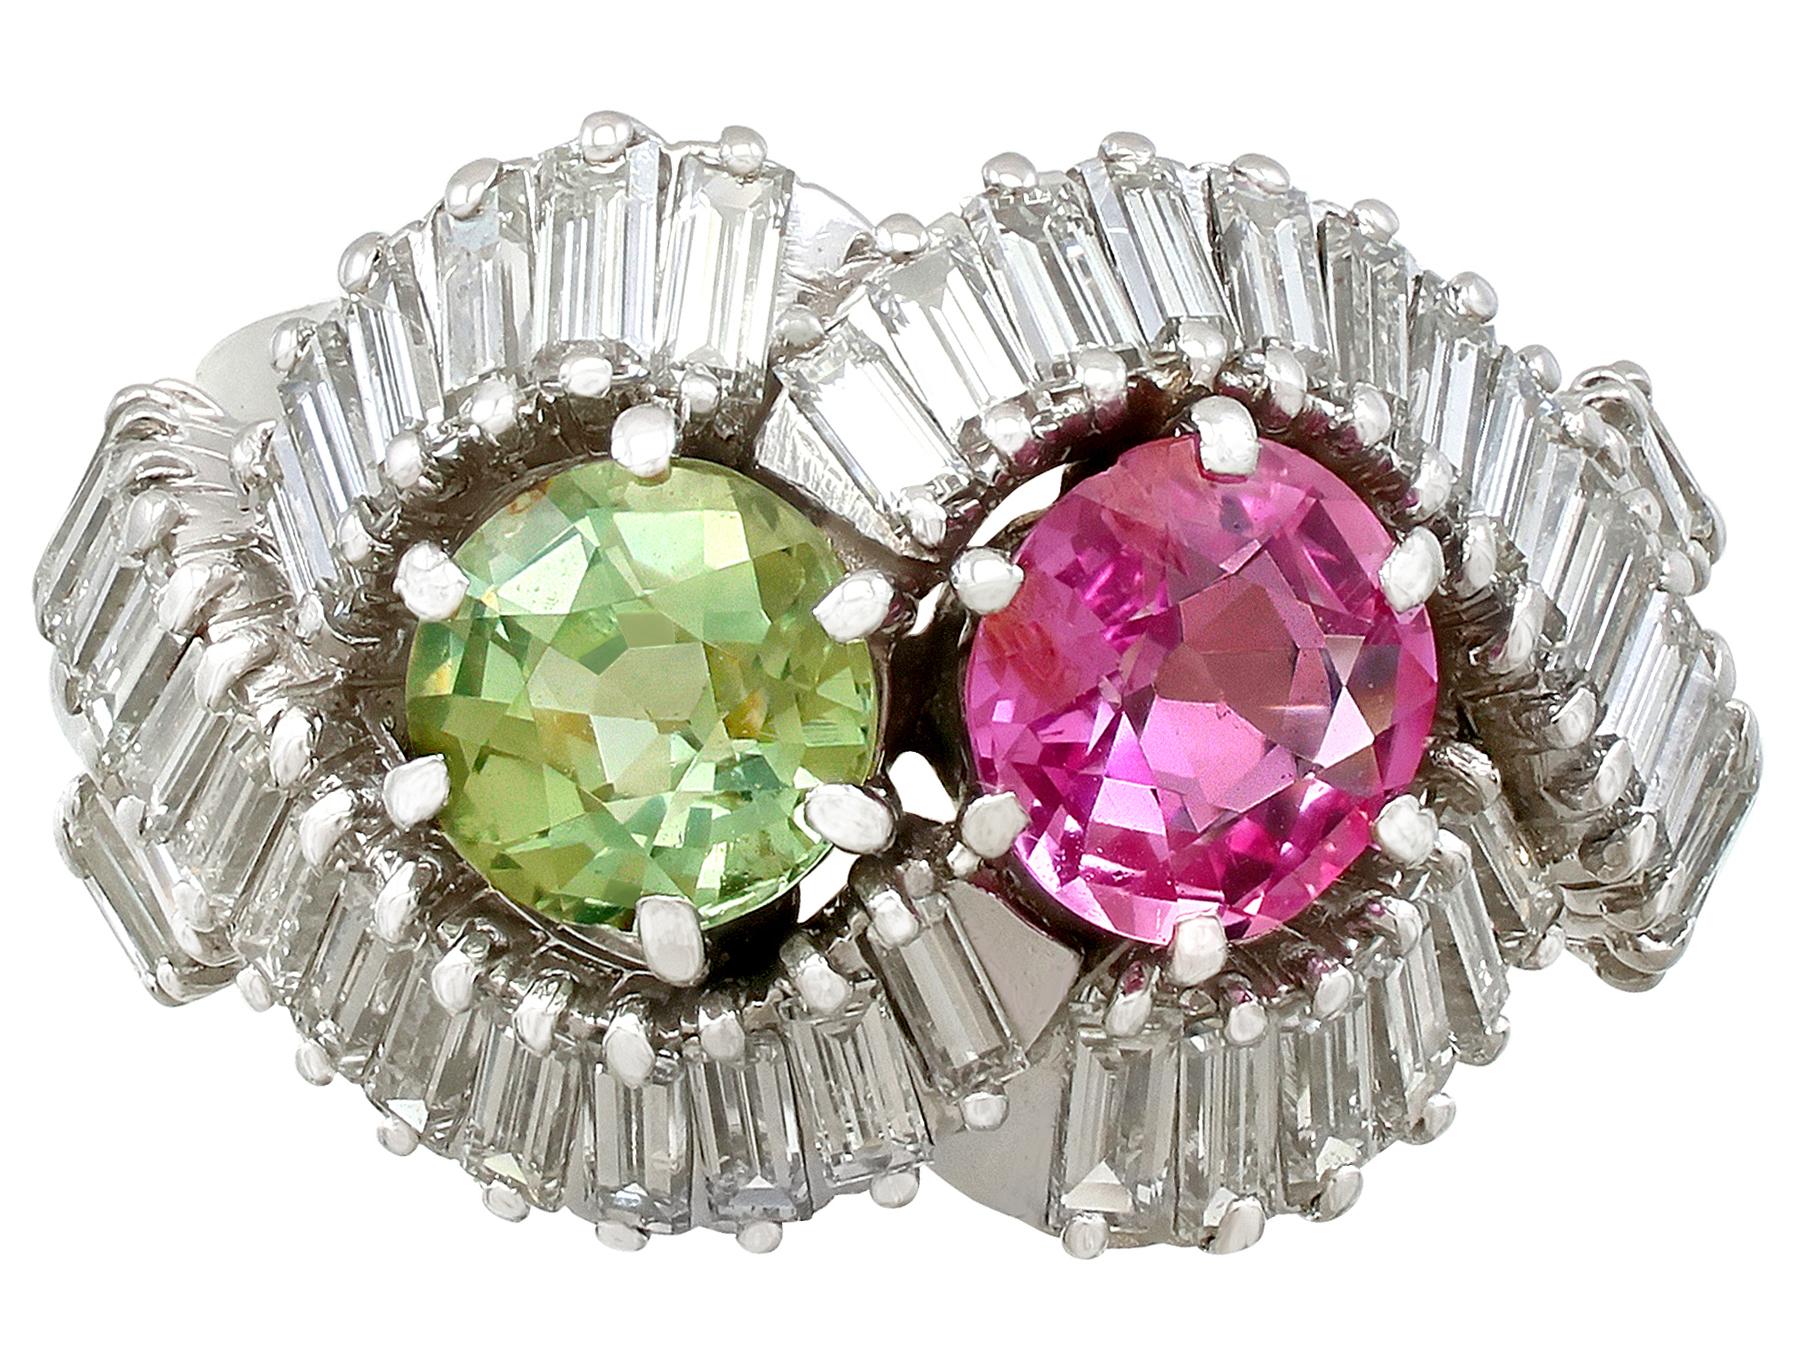 Ein atemberaubender französischer Vintage-Ring mit 2,34 Karat rosa und grünem Saphir, 2,45 Karat Diamanten und Platin von Boucheron; Teil unserer vielfältigen Edelstein-Schmuckkollektionen.

Dieser atemberaubende, feine und beeindruckende